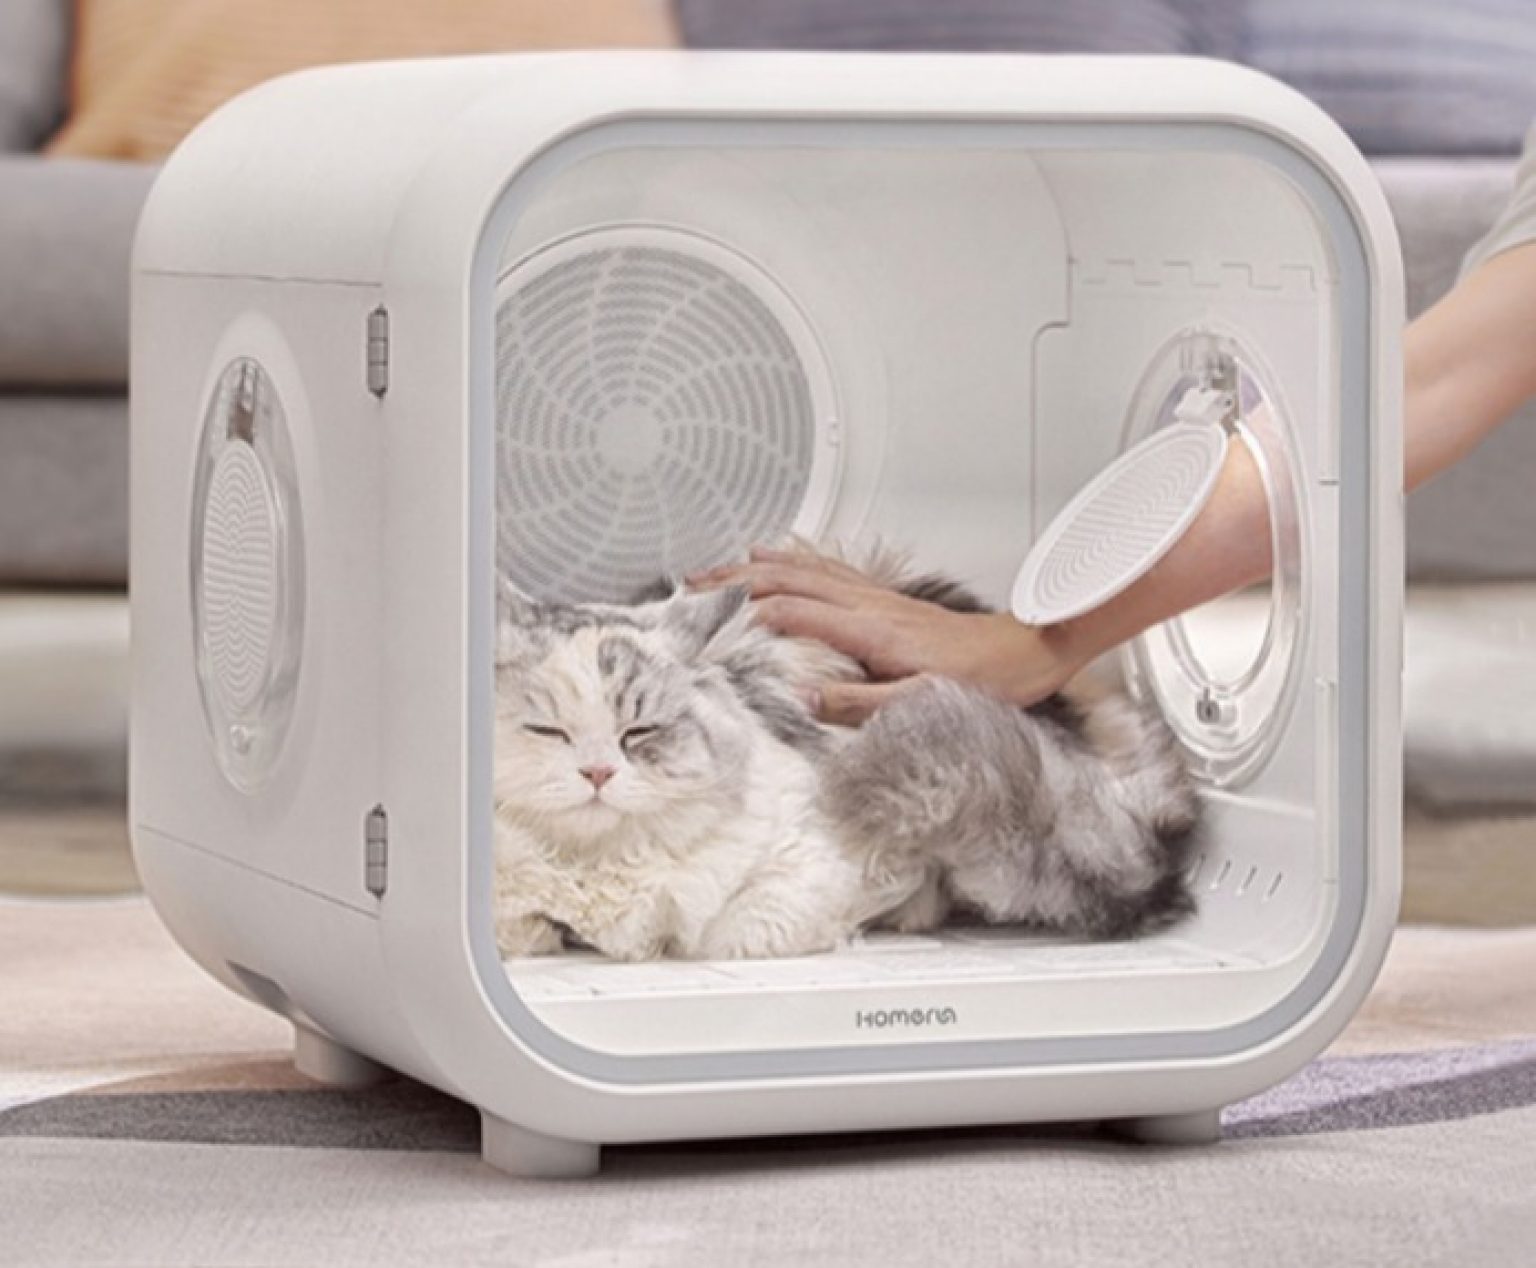 Homerun Pet Drying Box is the new cat drying cabin on Xiaomi Youpin